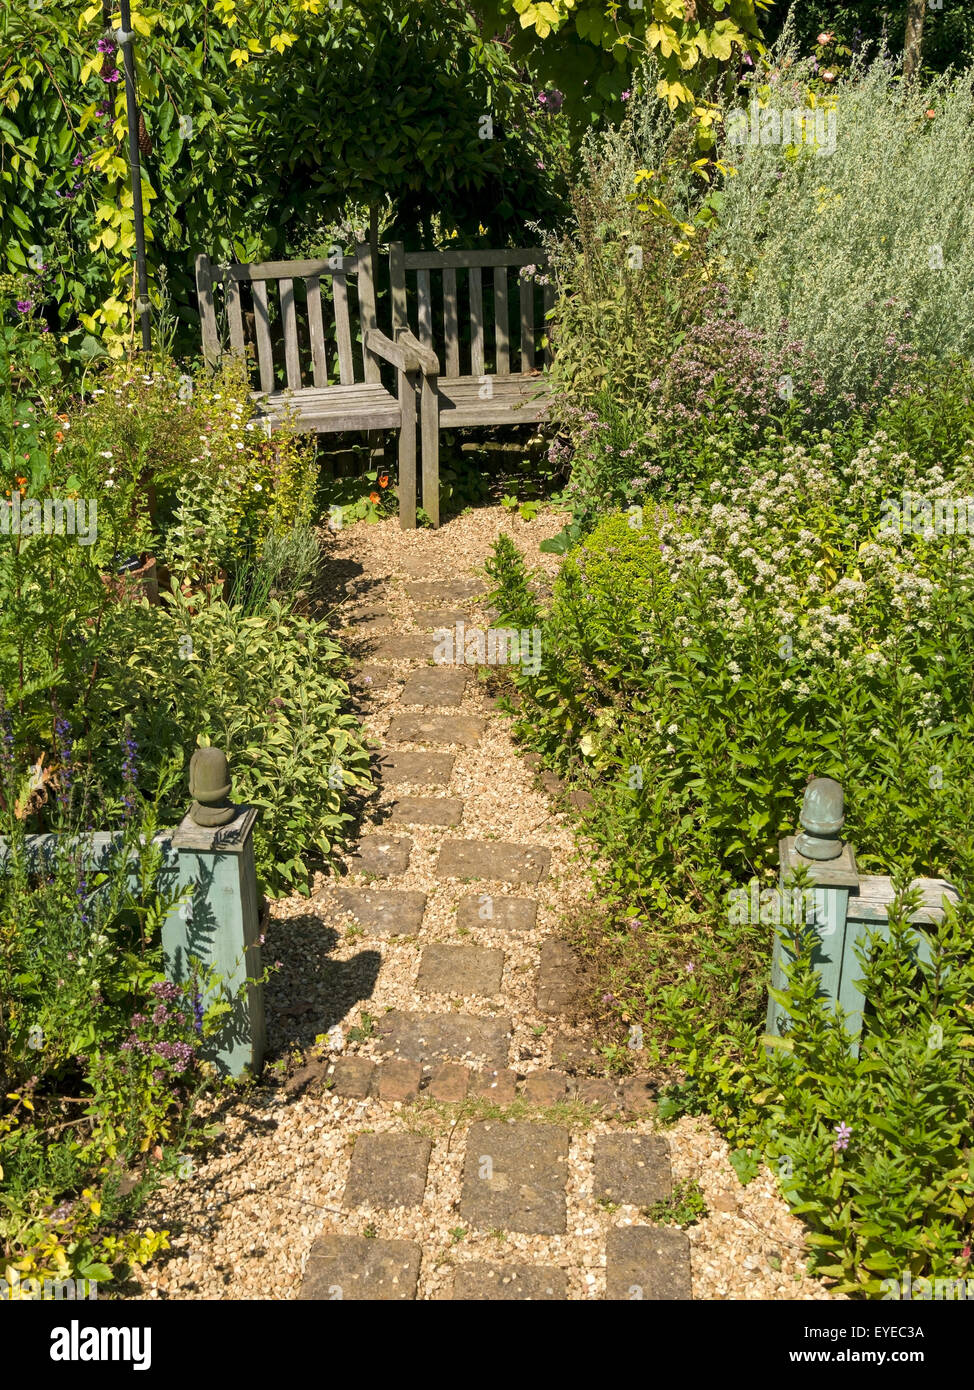 Petit cottage anglais avec jardin et sentier de gravier, des frontières et des sièges de jardin en bois, jardins, Barnsdale, Rutland Angleterre,UK Banque D'Images